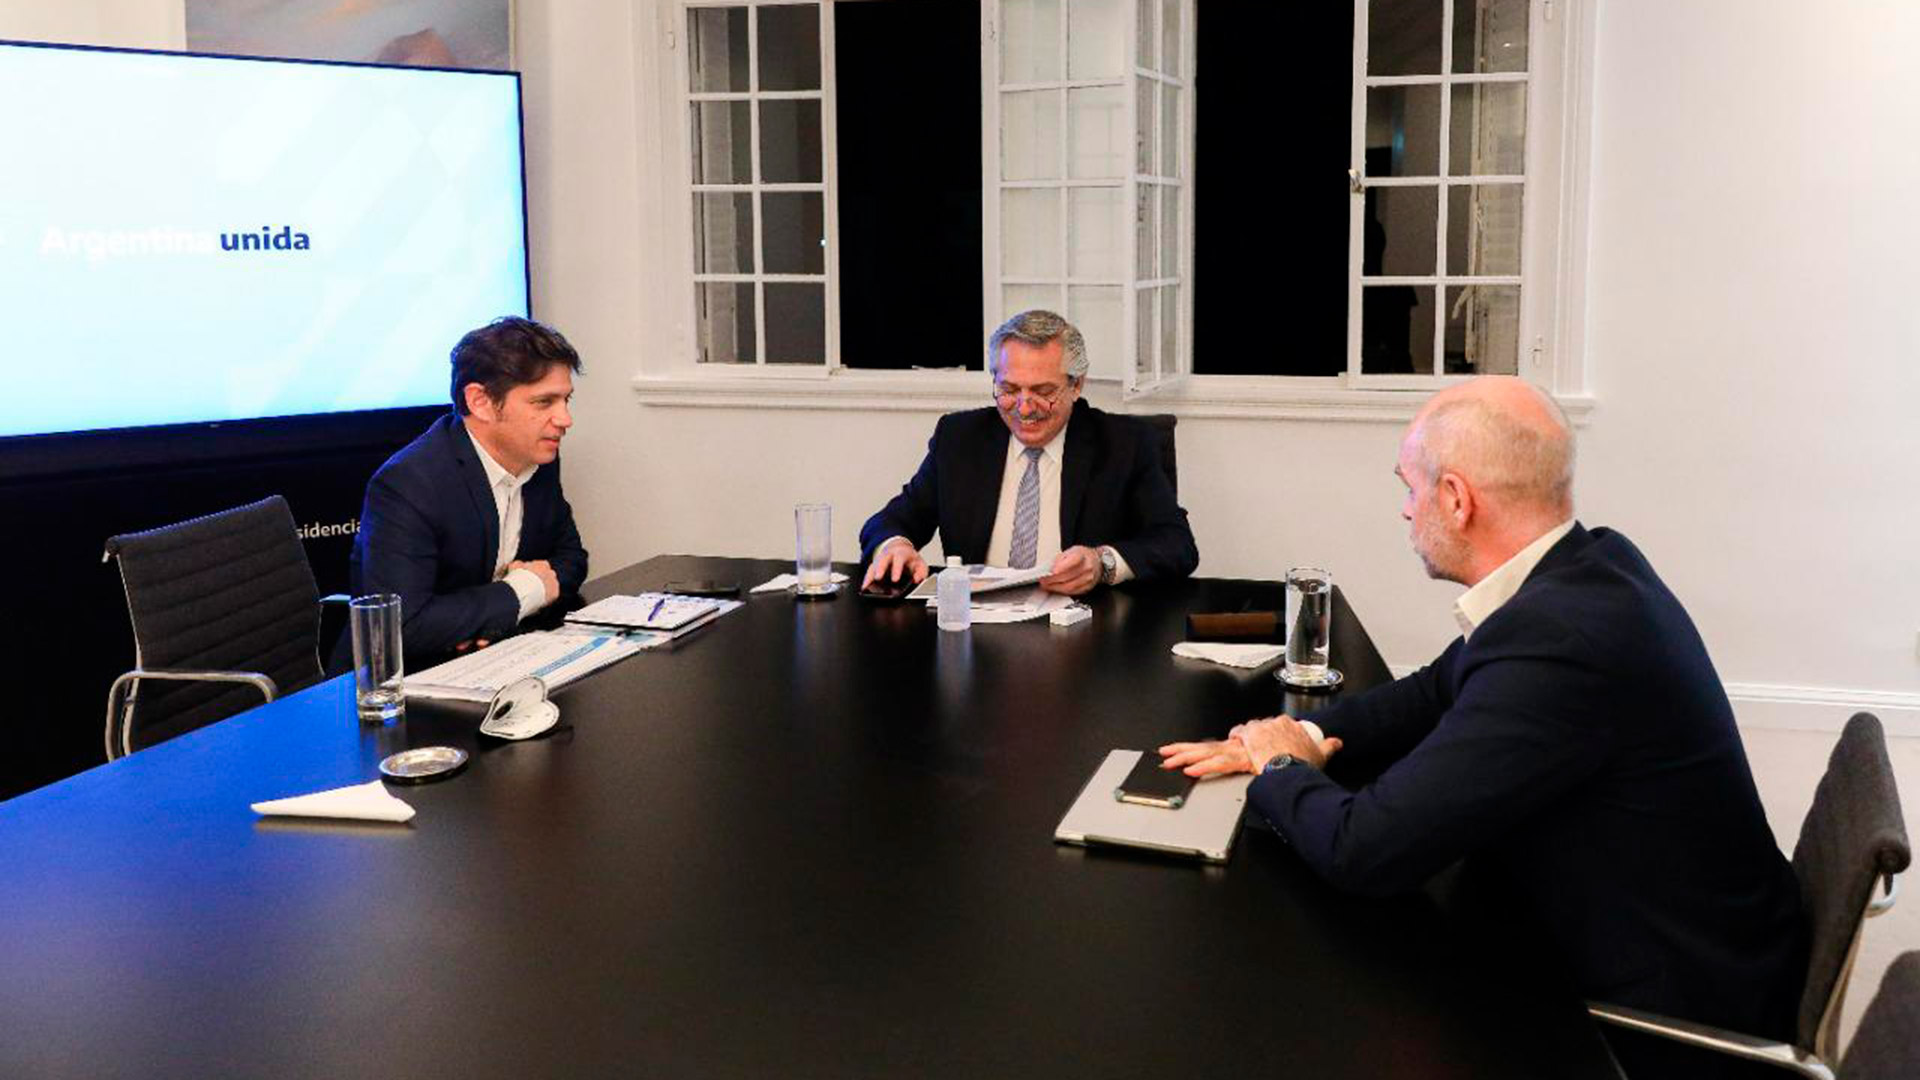 Una relación desigual: Axel Kicillof, el presidente Alberto Fernández y el jefe de Gobierno porteño, Horacio Rodríguez Larreta, en la más reciente reunión en Olivos